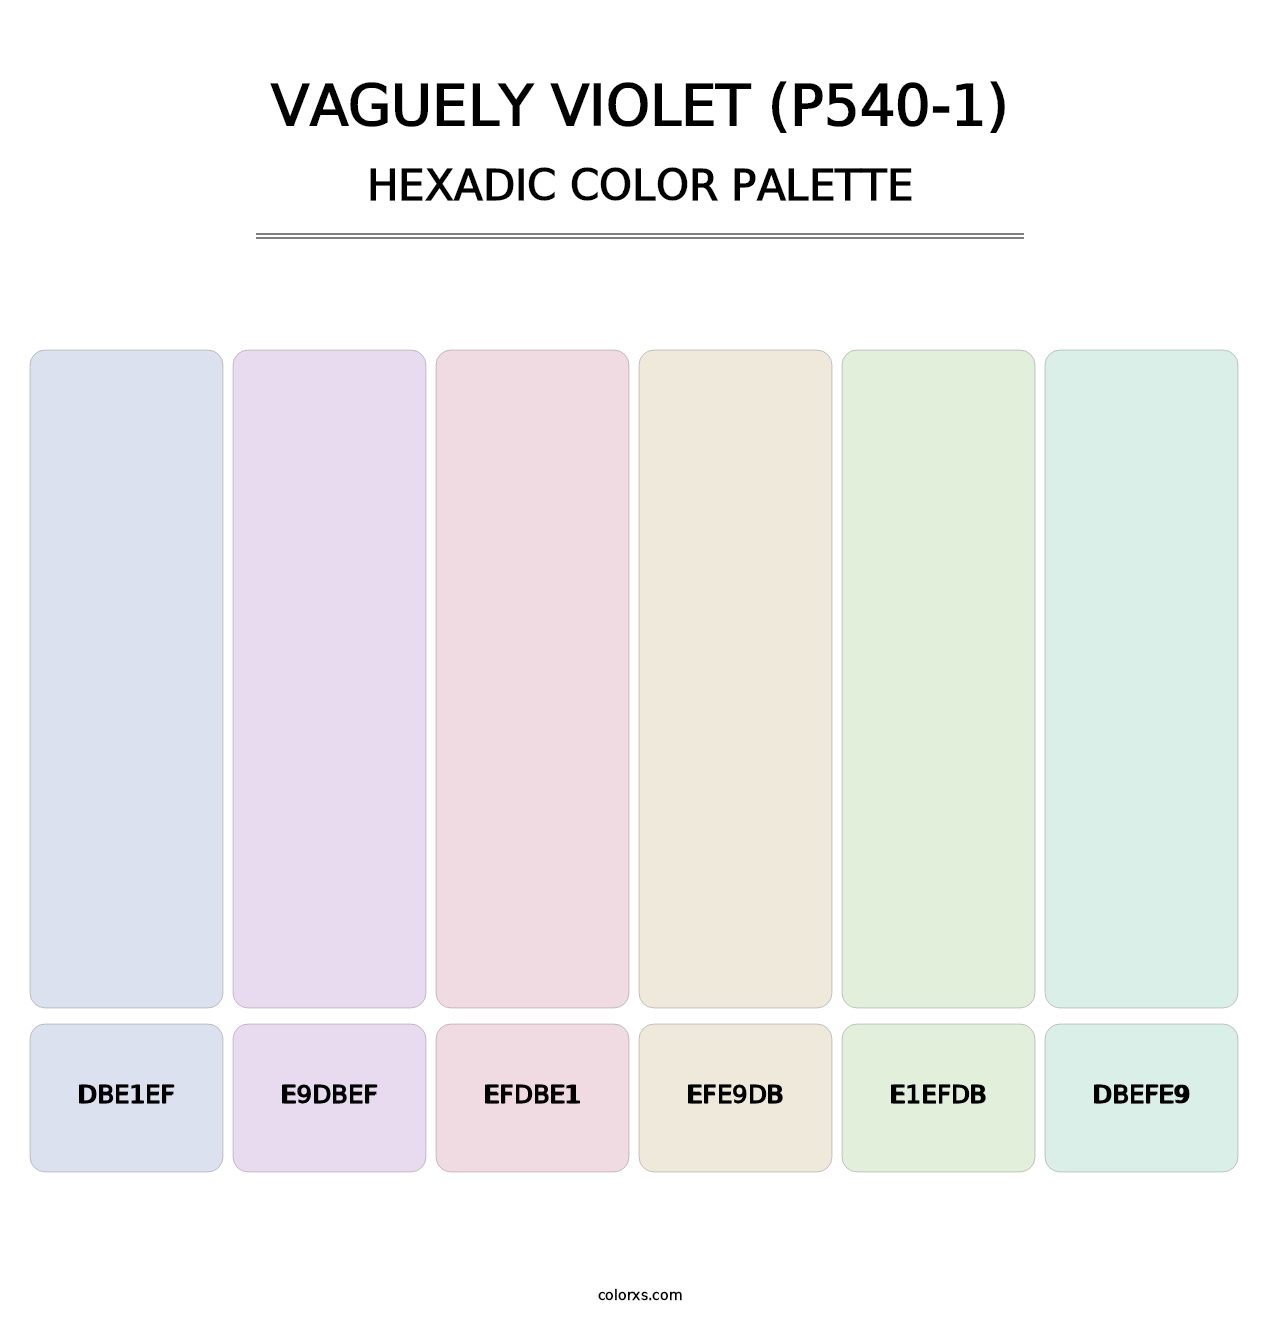 Vaguely Violet (P540-1) - Hexadic Color Palette